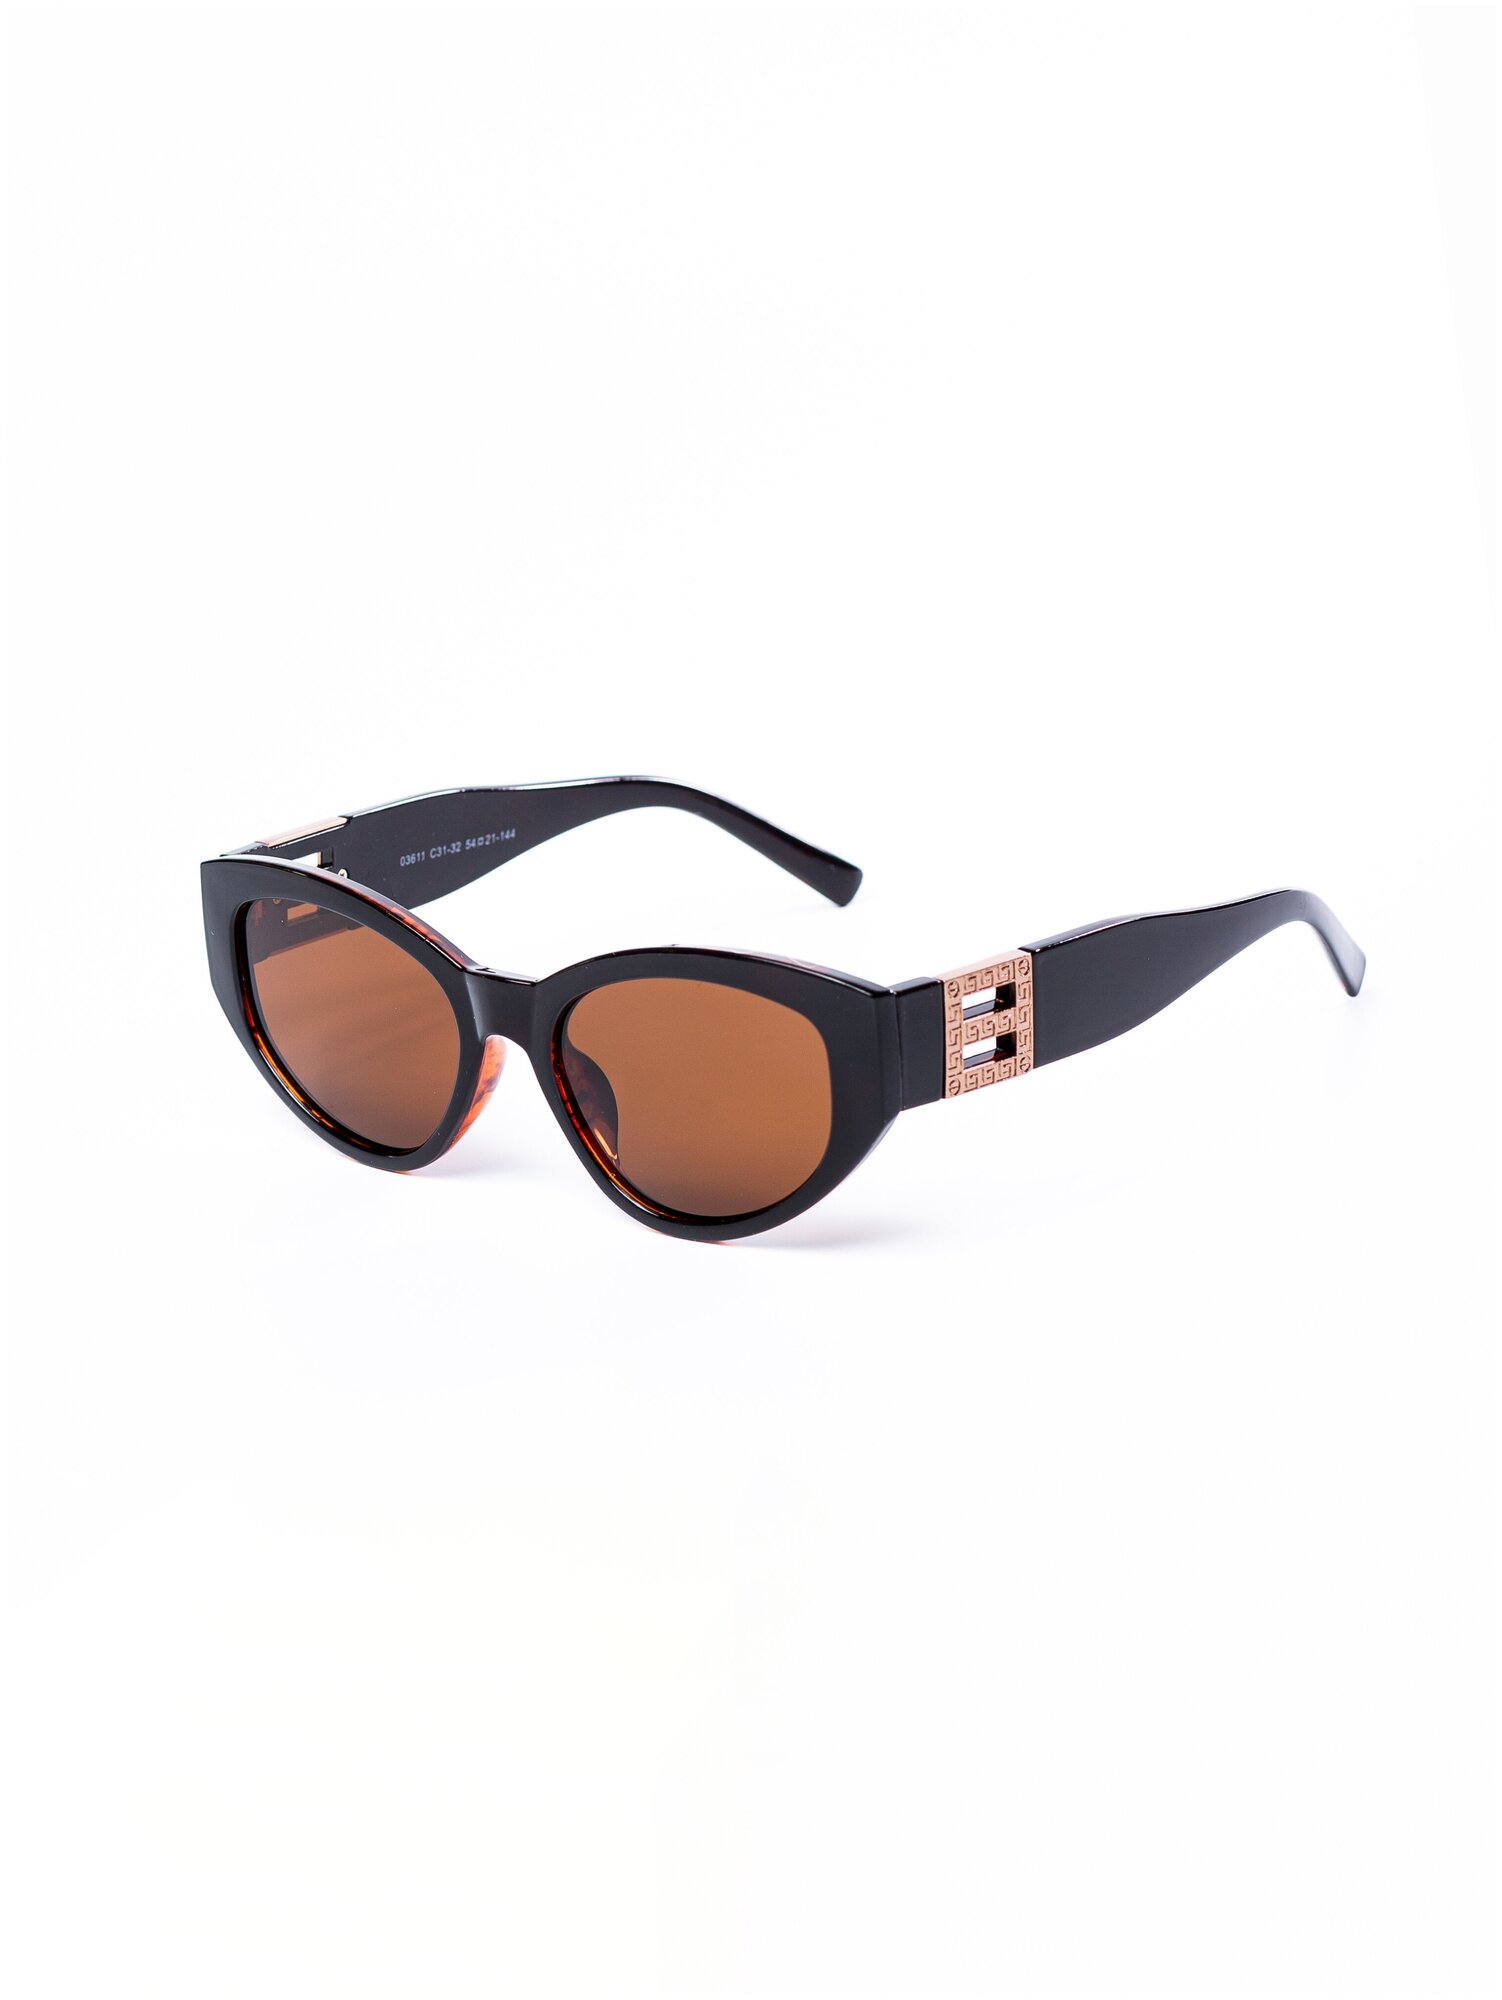 Солнцезащитные очки женские / Оправа «кошачий глаз» / Стильные очки / Ультрафиолетовый фильтр / Защита UV400 / Чехол в подарок / Темные очки 200422534